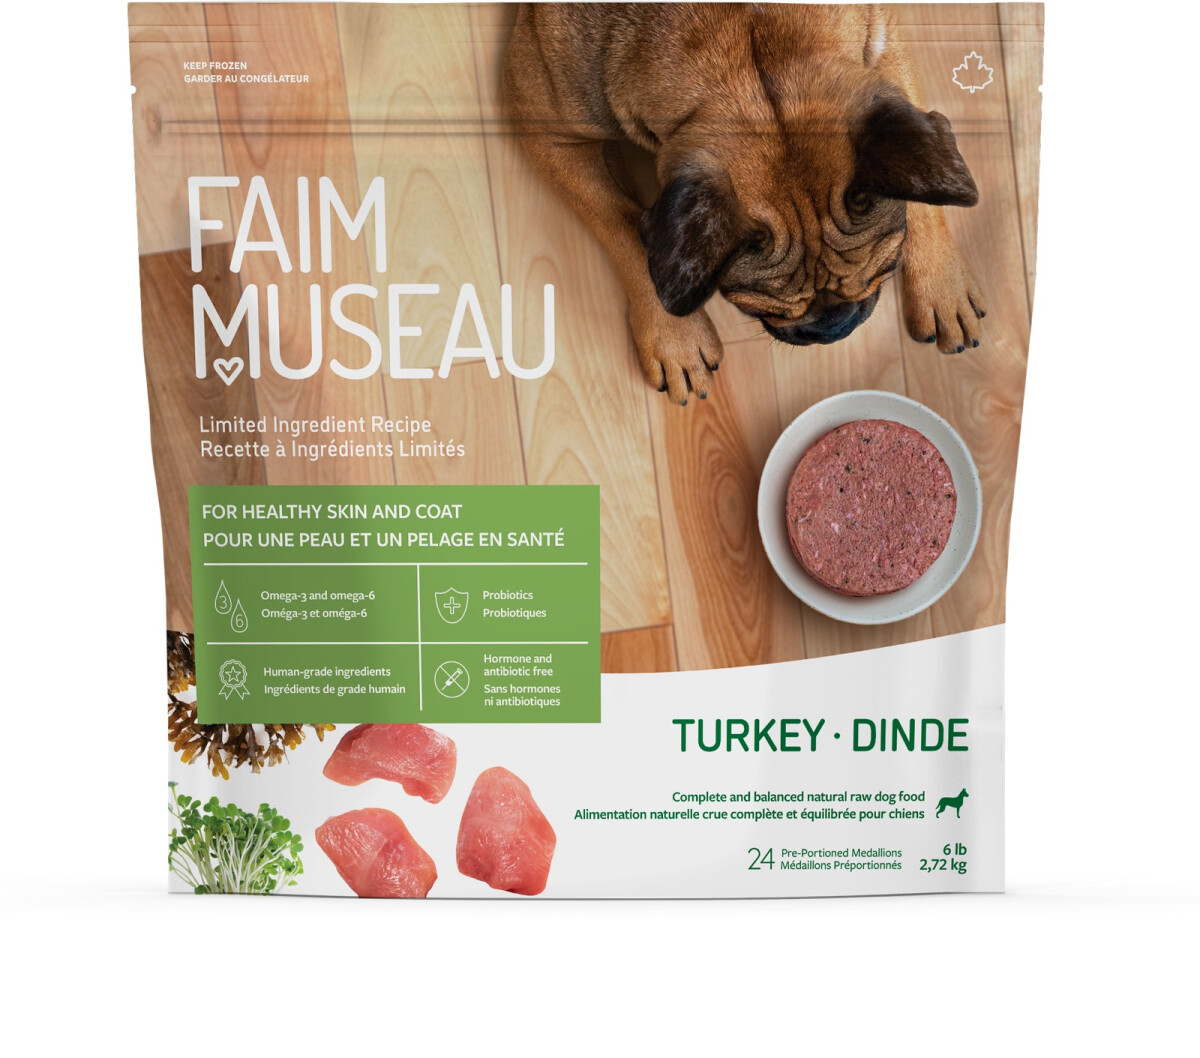 Fm292 - Nourriture crue recette ingrédients limités à la dinde pour chiens - Faim Museau